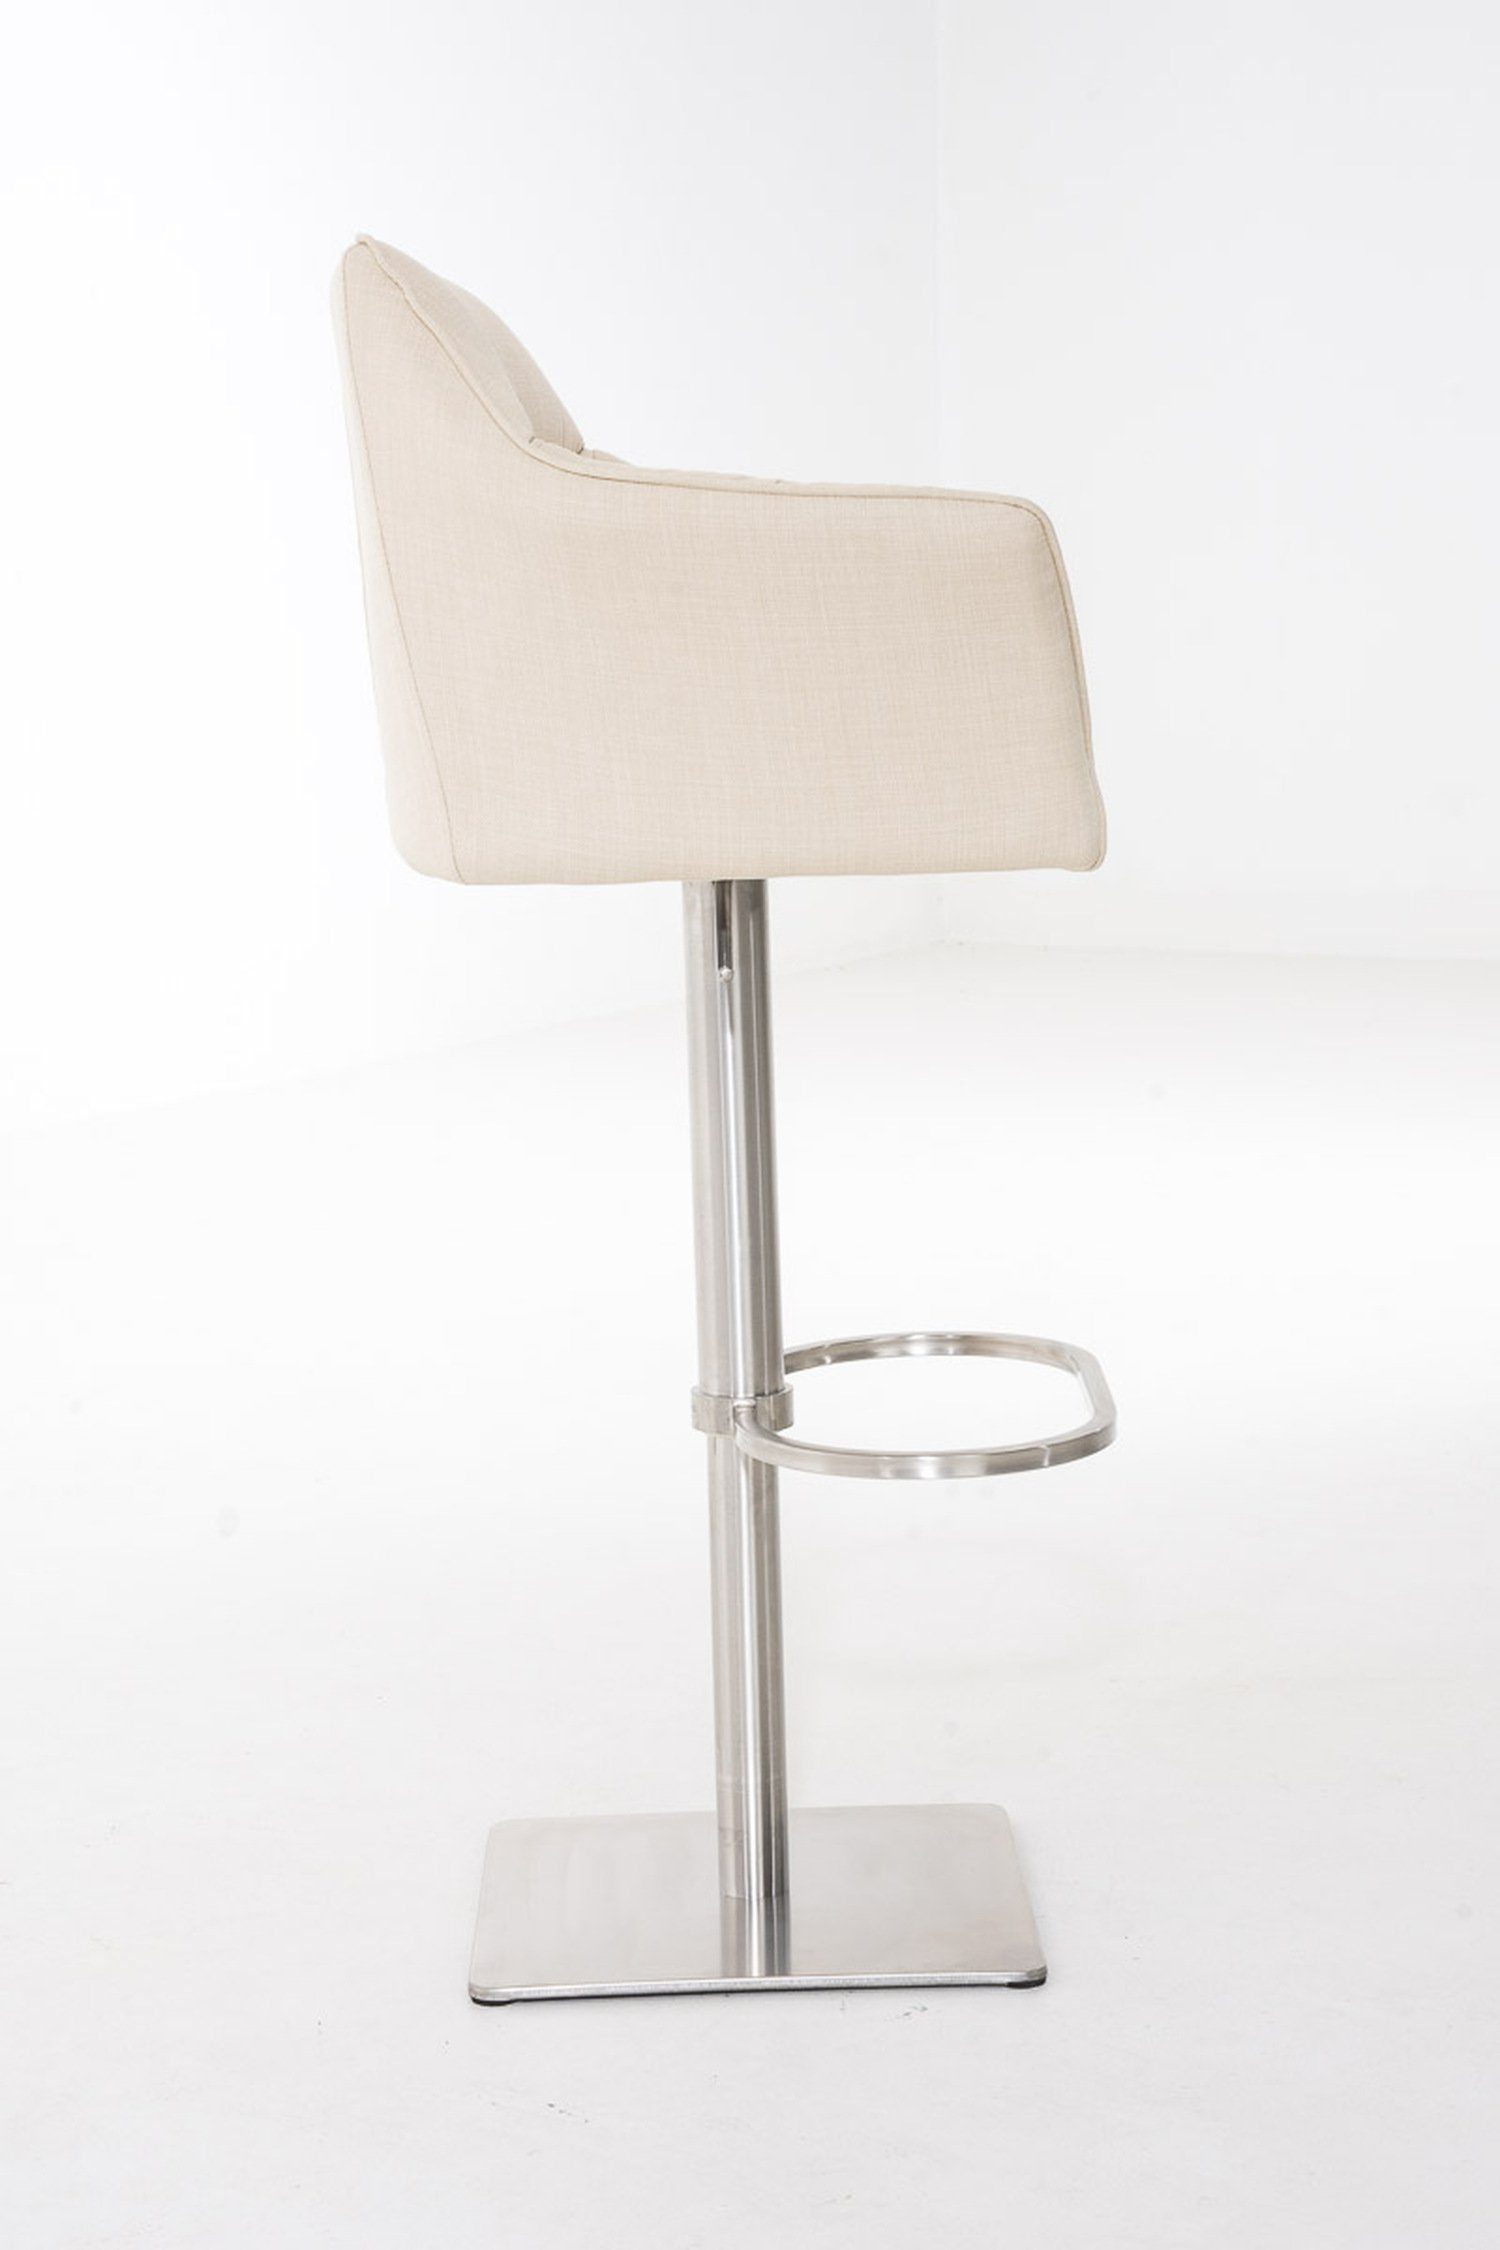 und drehbar Sitzfläche: Fußstütze Rückenlehne Barhocker Hocker für (mit - 360° & - TPFLiving - Küche), Damaso Theke Creme Edelstahl Gestell Stoff